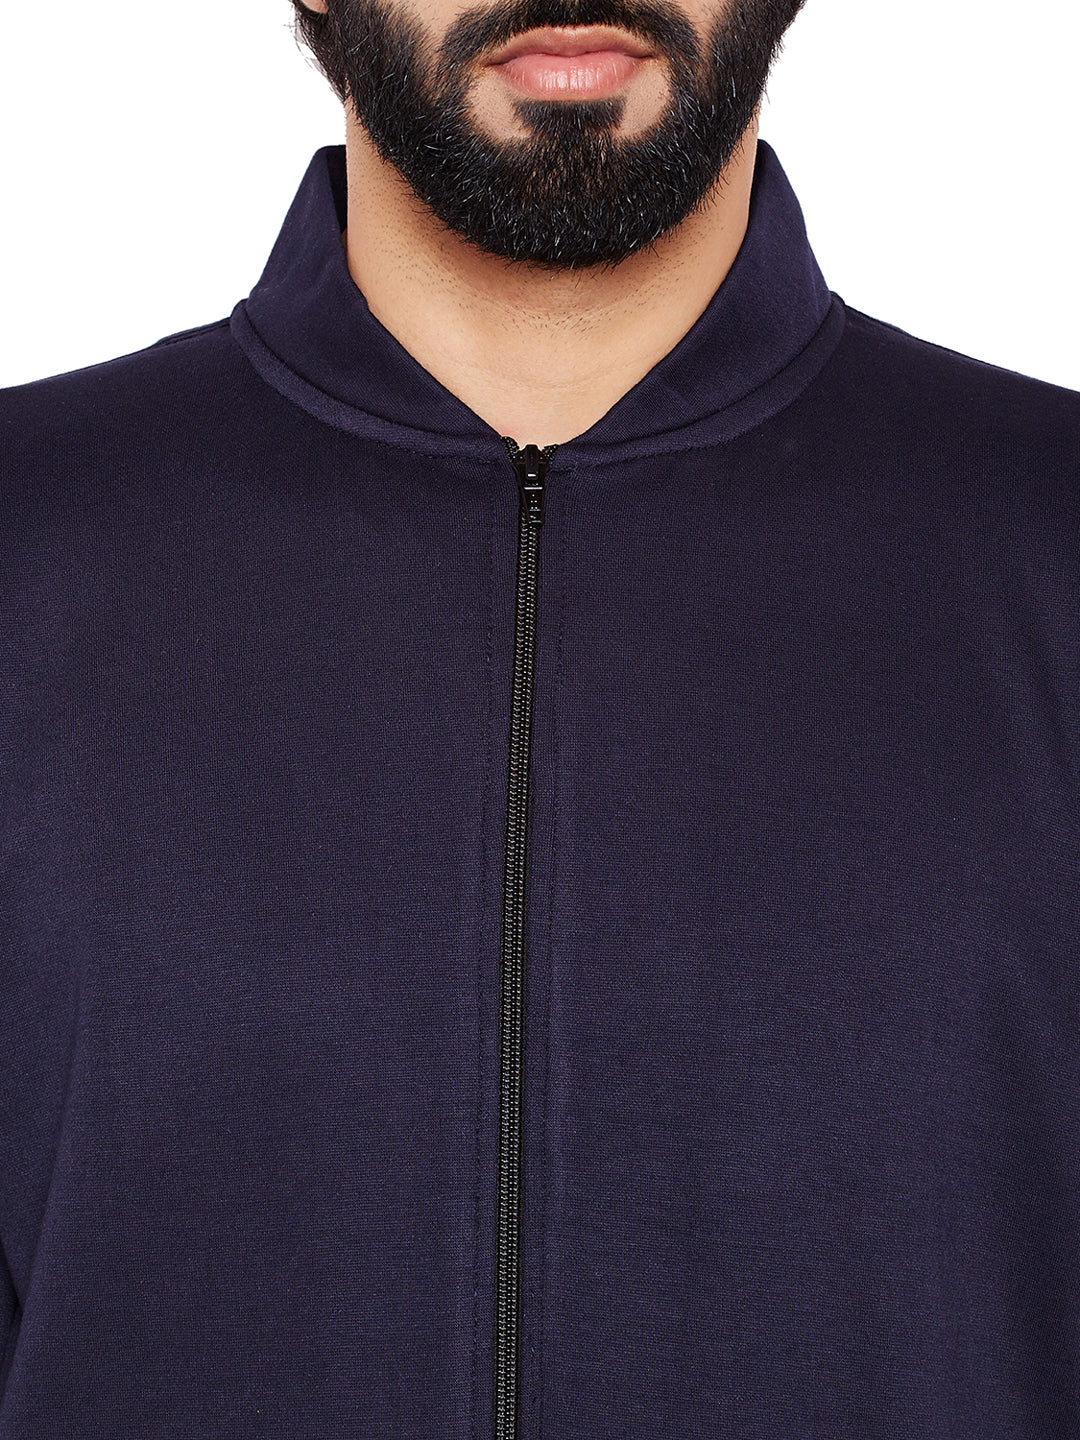 Men Navy Blue Solid Mandarin Collar Sweatshirt